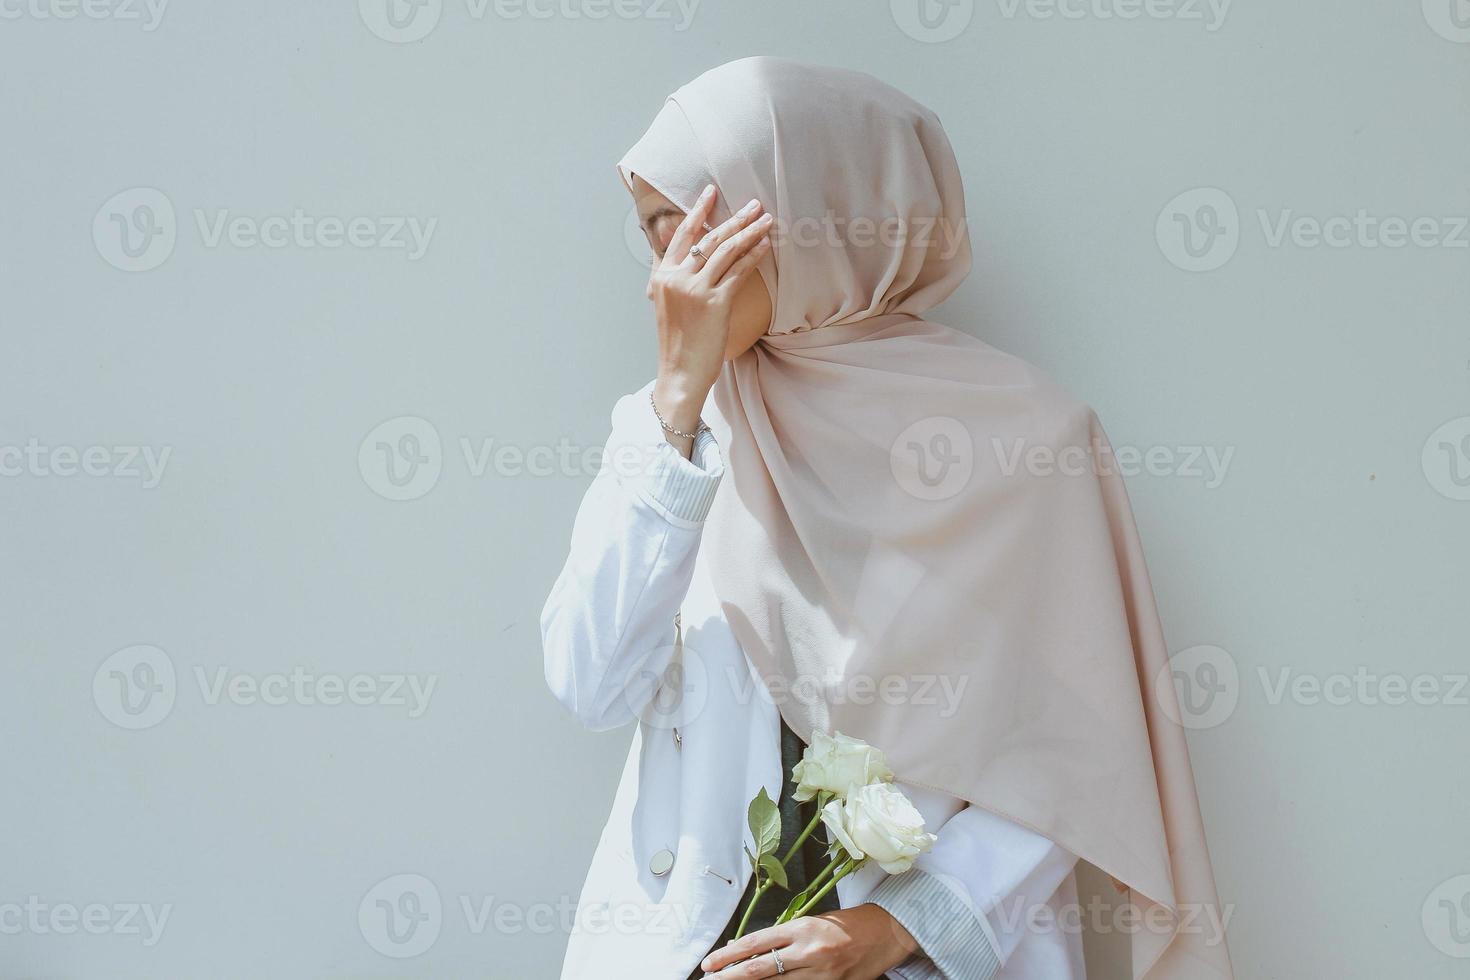 jonge moslimvrouw die een witte roos vasthoudt en haar gezicht bedekt met de hand foto